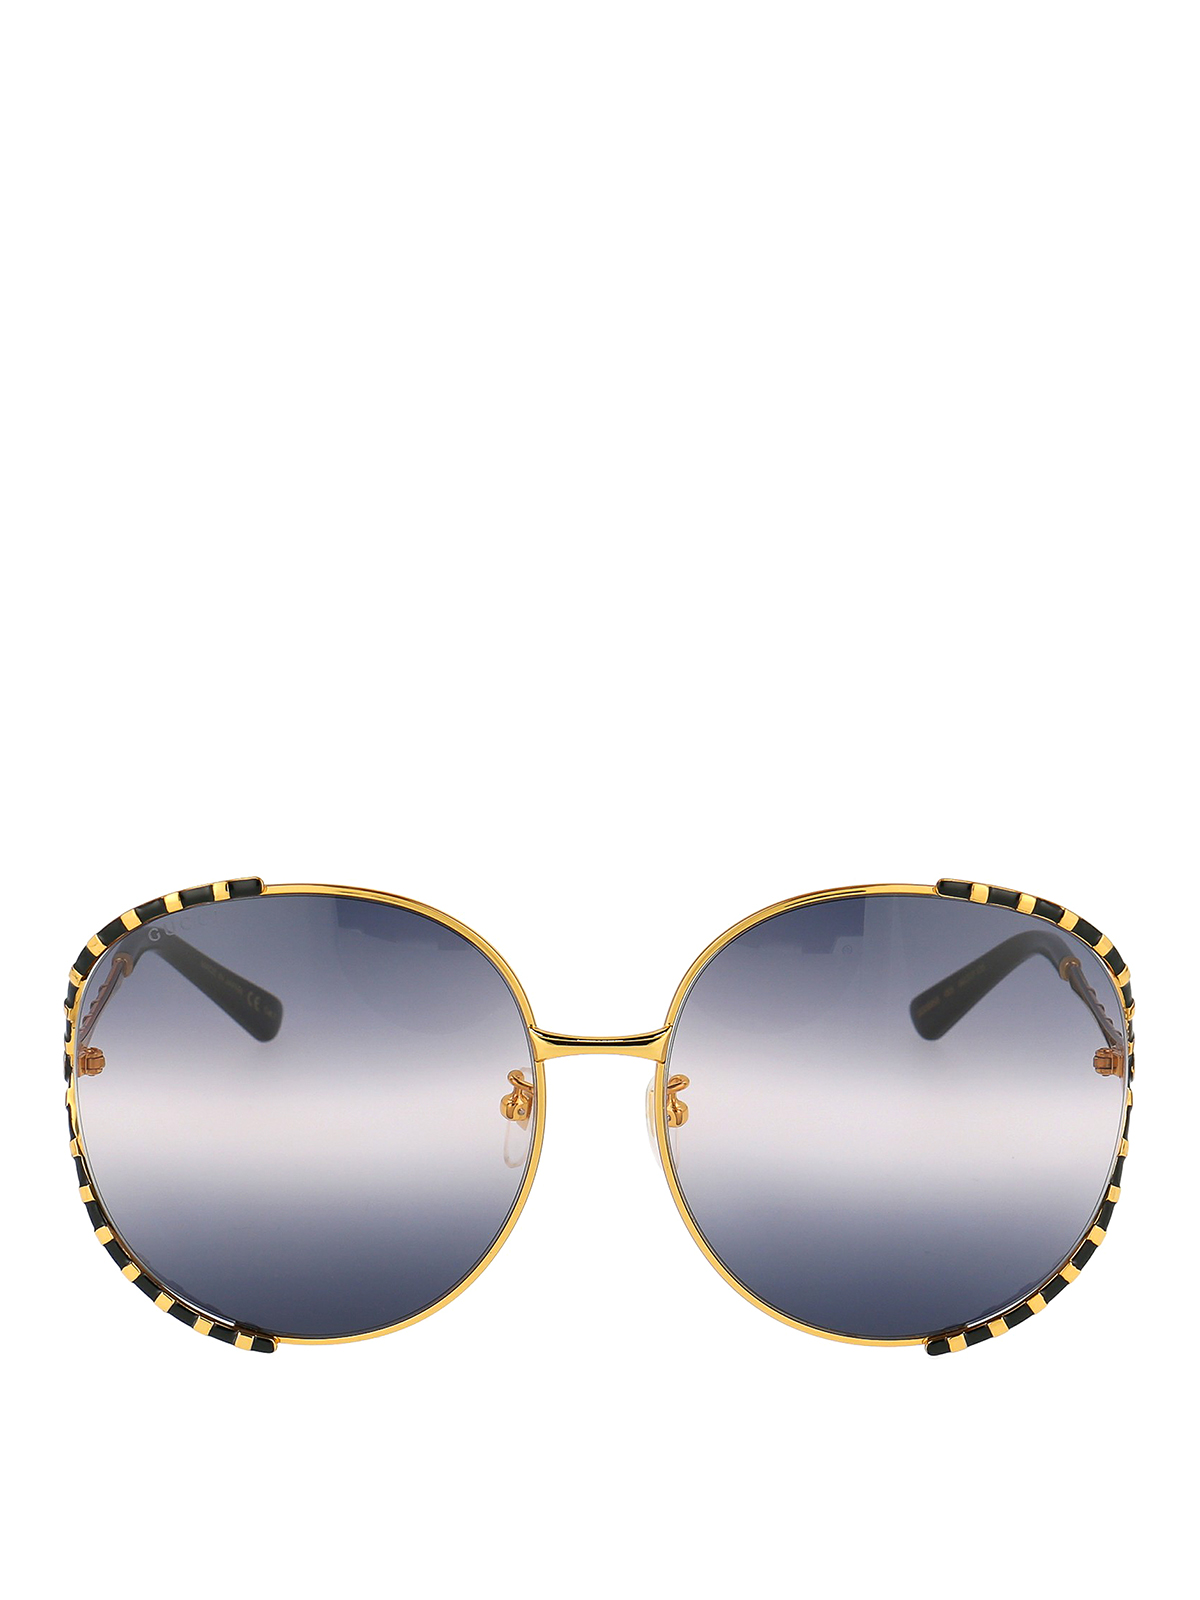 Sunglasses Gucci Two Tone Oversized Round Sunglasses Gg0595s005